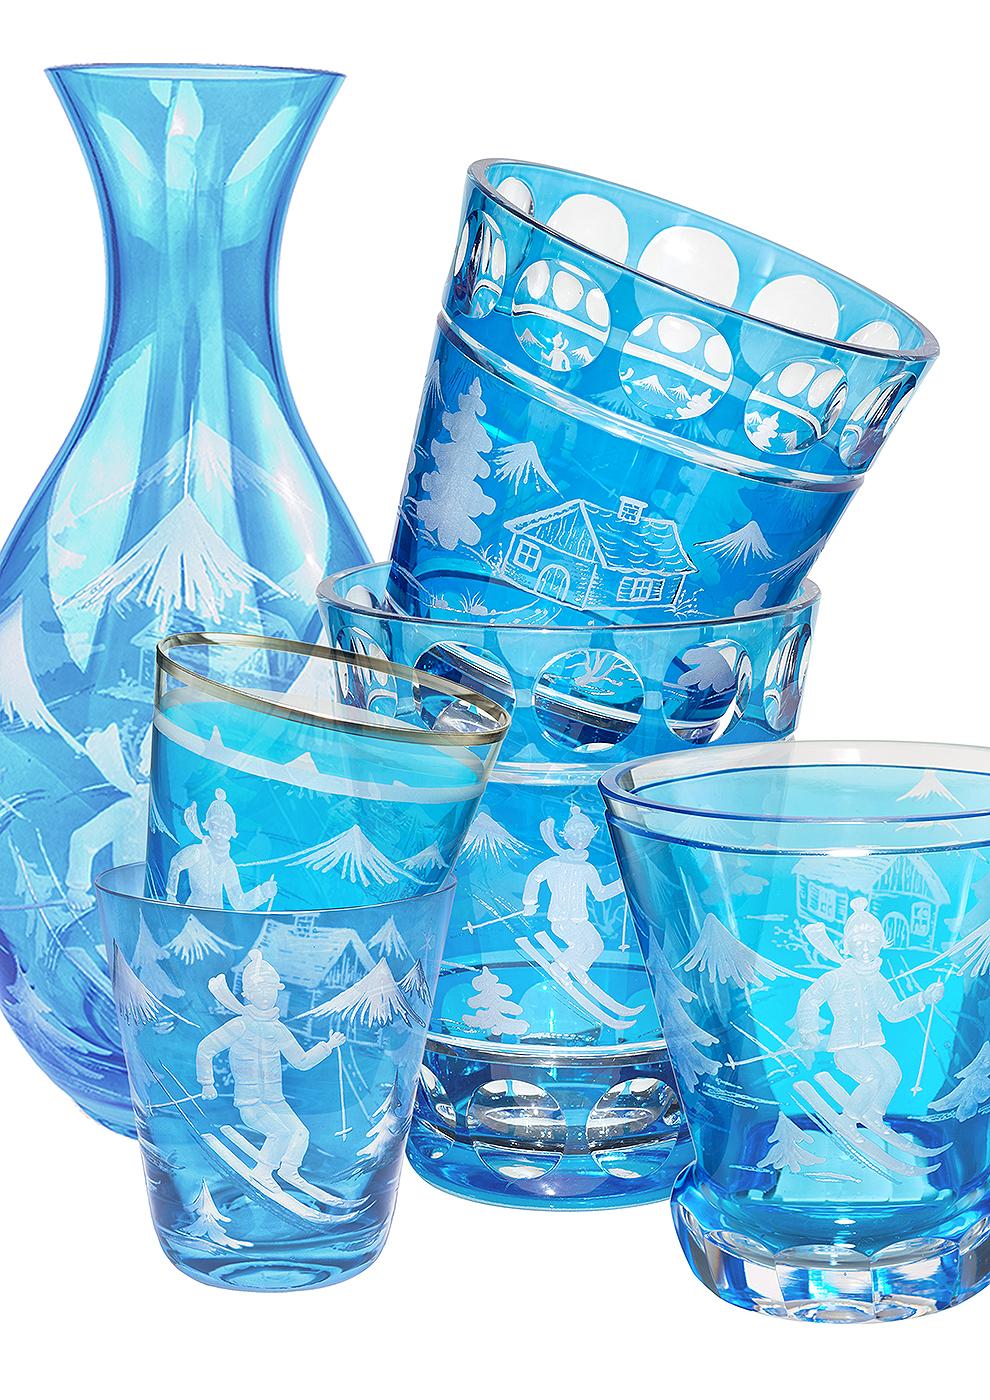 Country Sofina Boutique Kitzbuehel - Jupe décorative en verre bleu tardif et cristal de style campagnard en vente